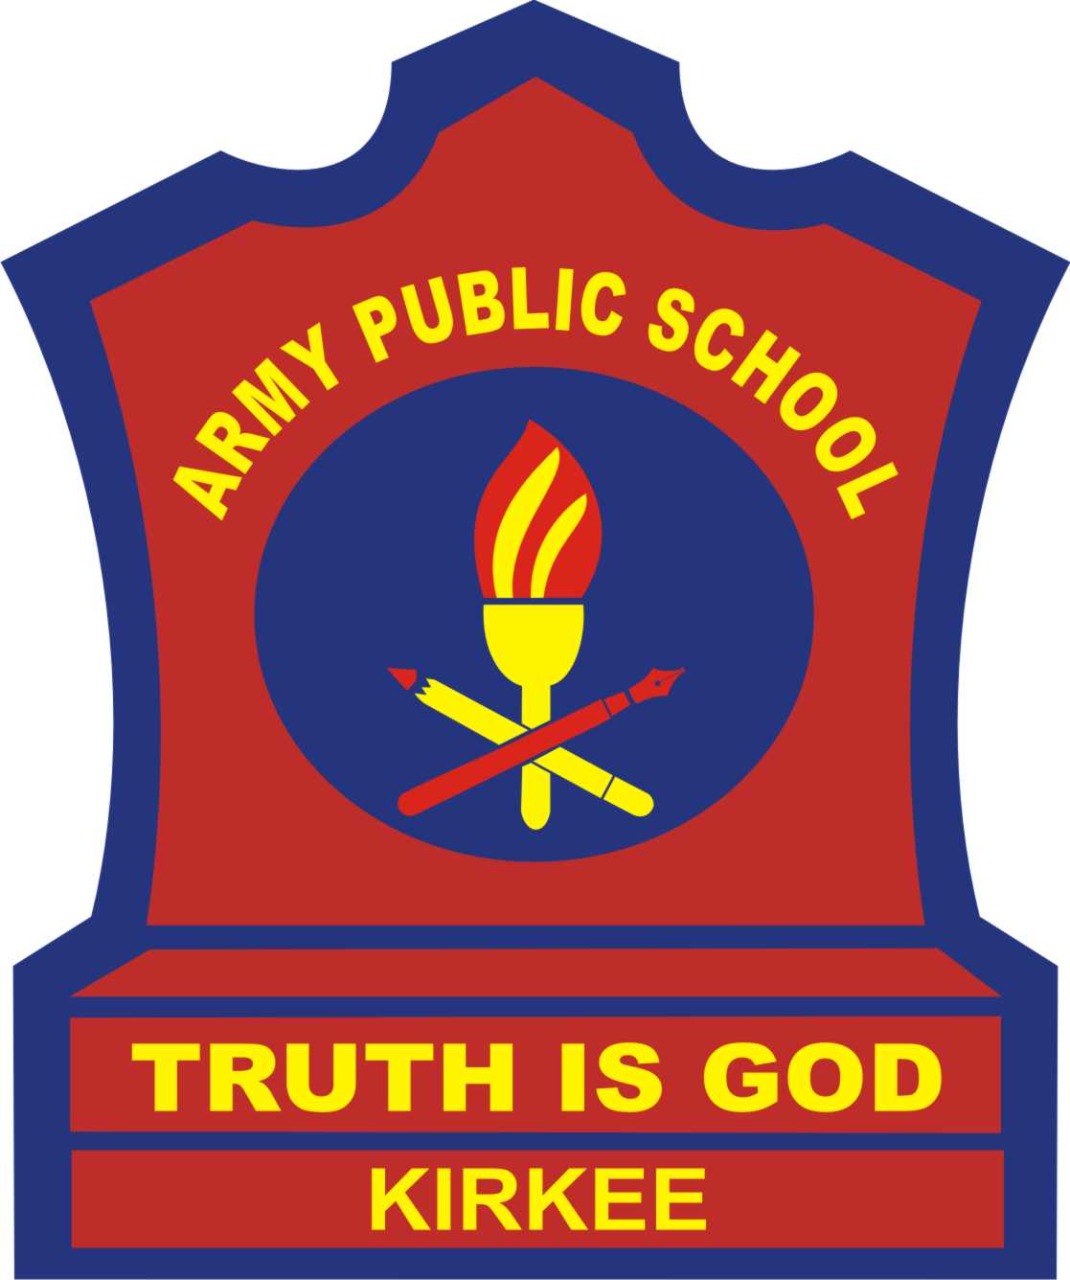 ARMY SNIPER SCHOOL LOGO